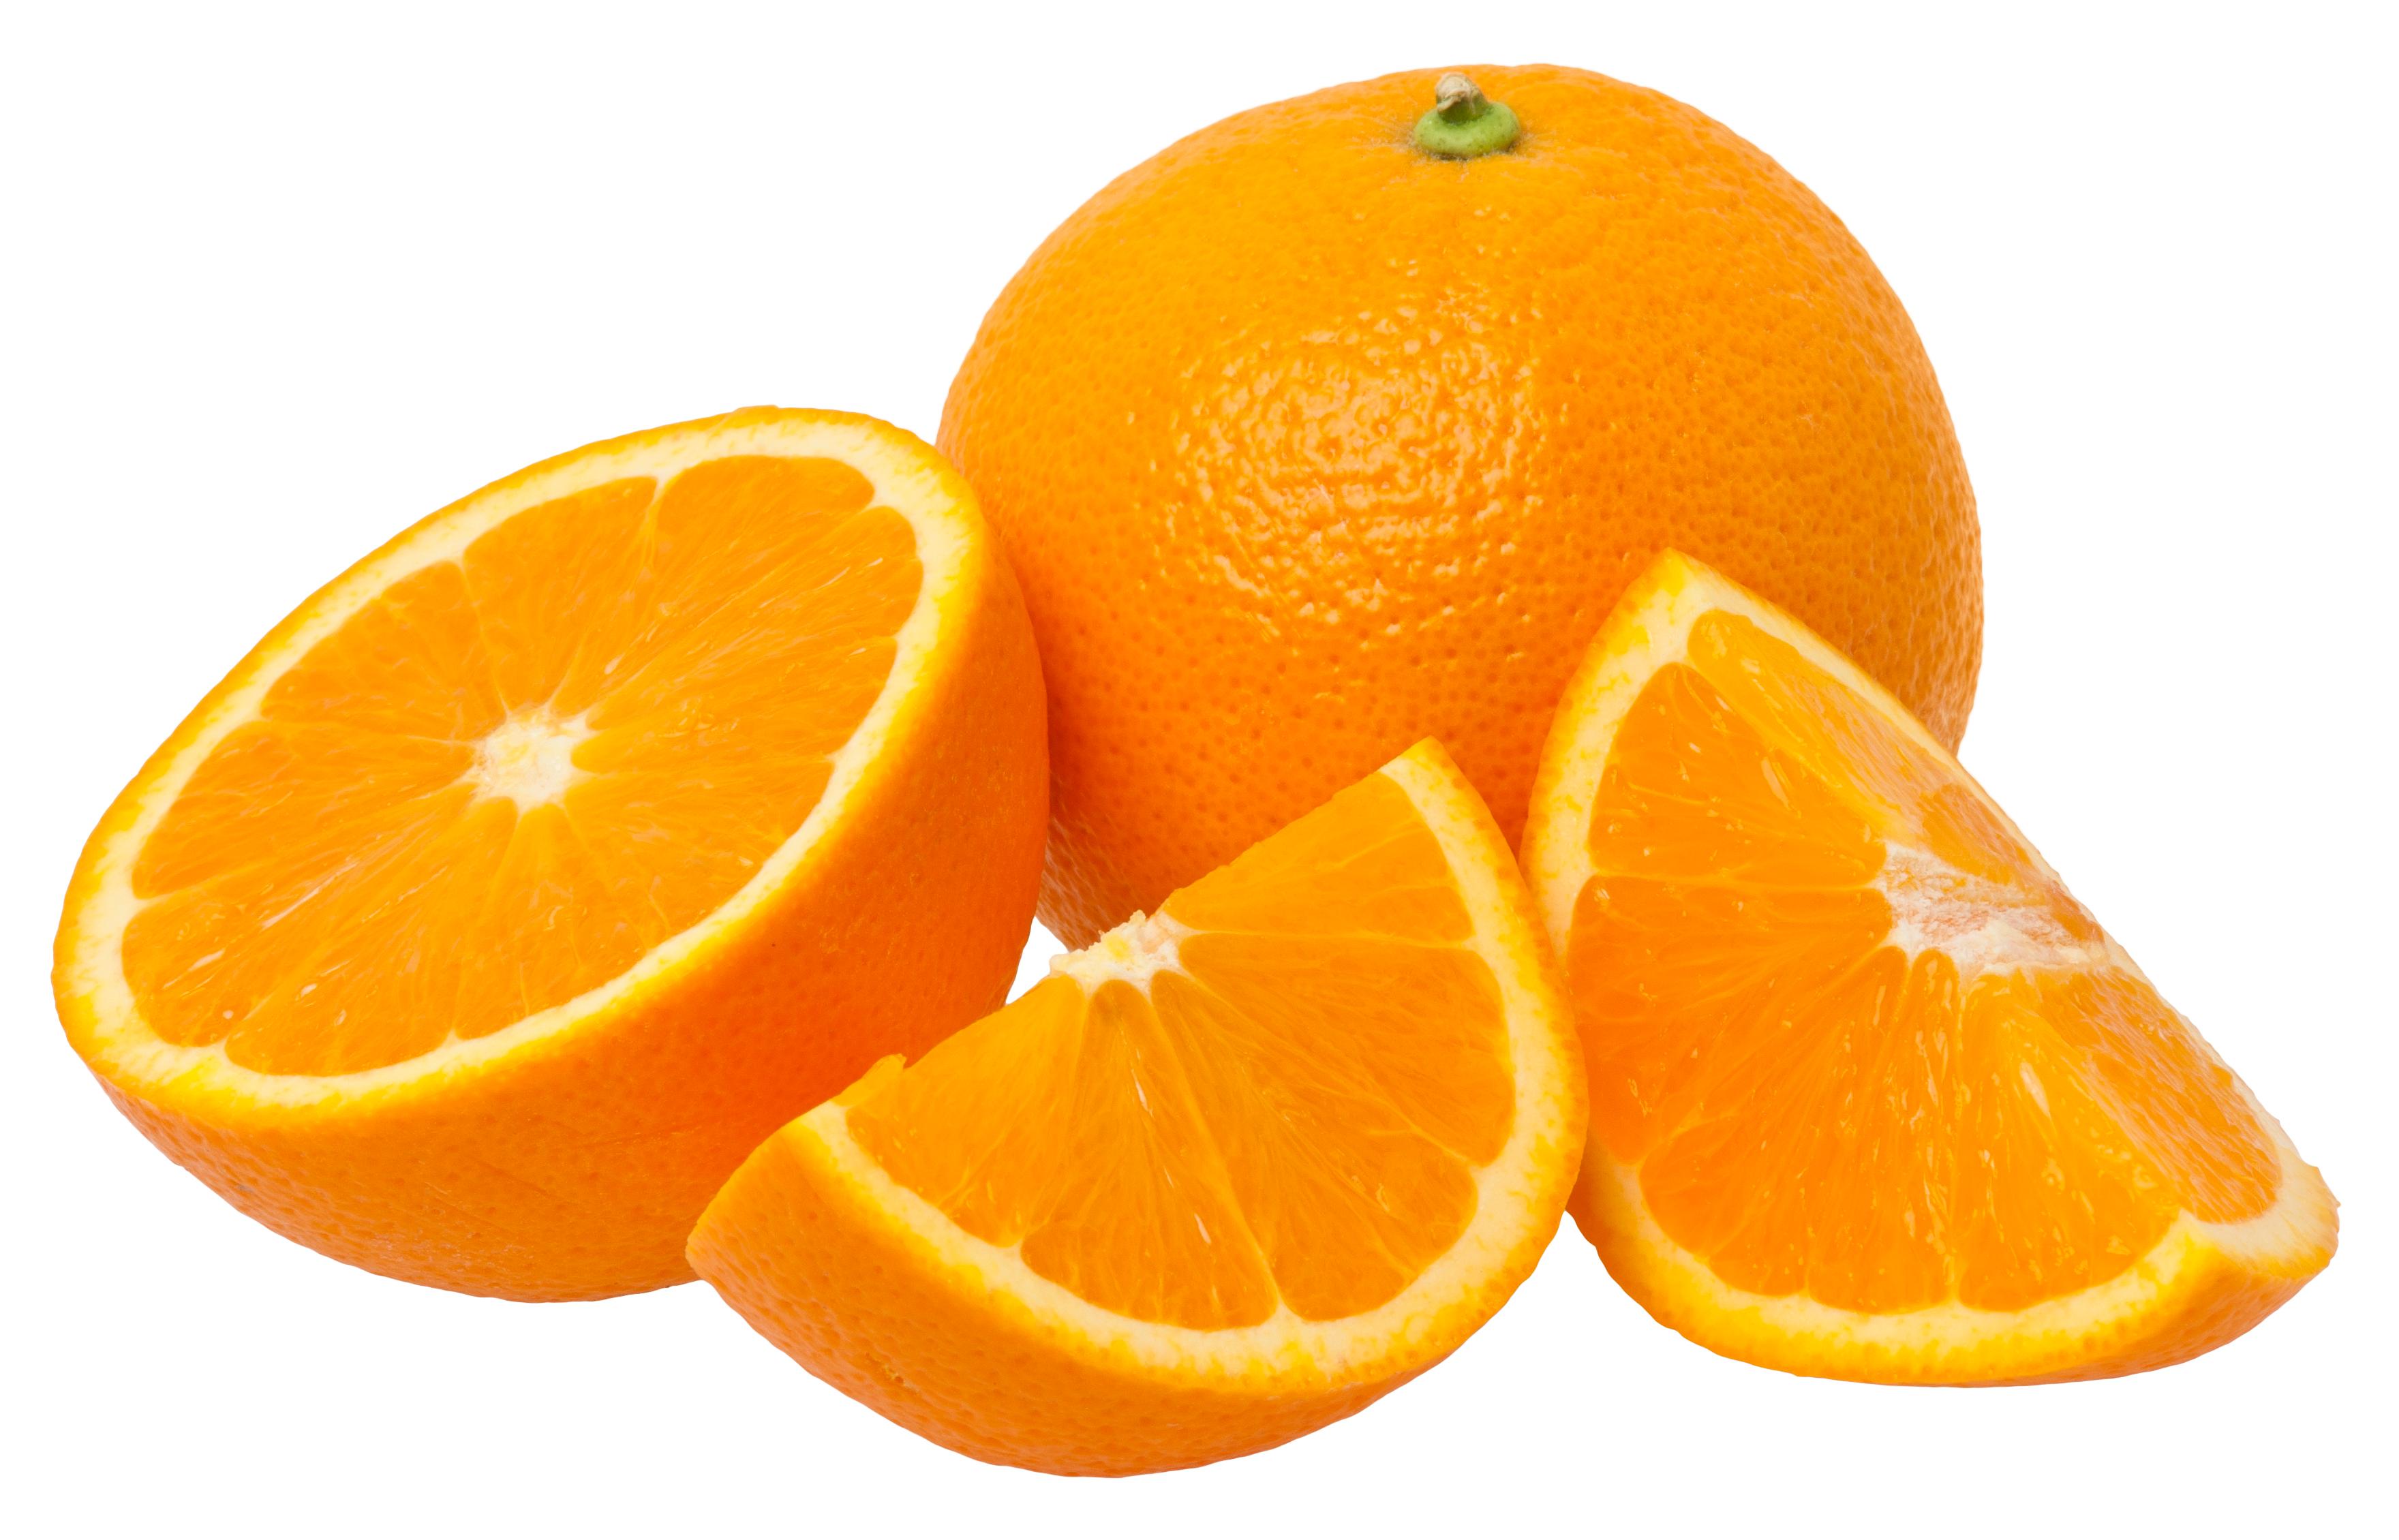 Velika narandža sadrži samo 80 kalorija - Avaz